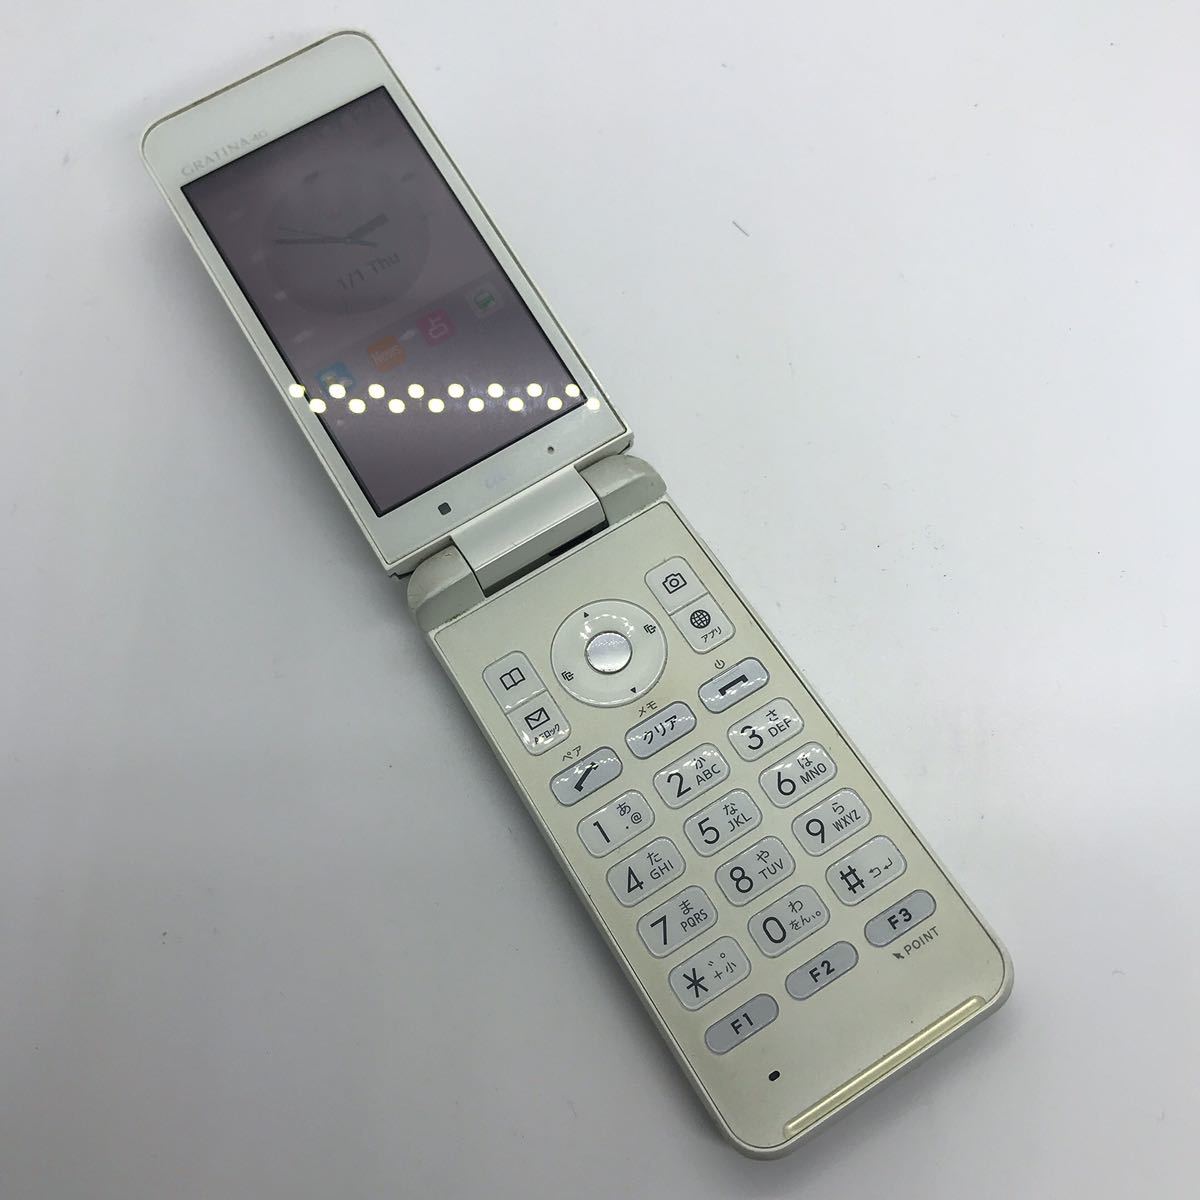 ヤフオク! -gratina(携帯電話本体)の中古品・新品・未使用品一覧